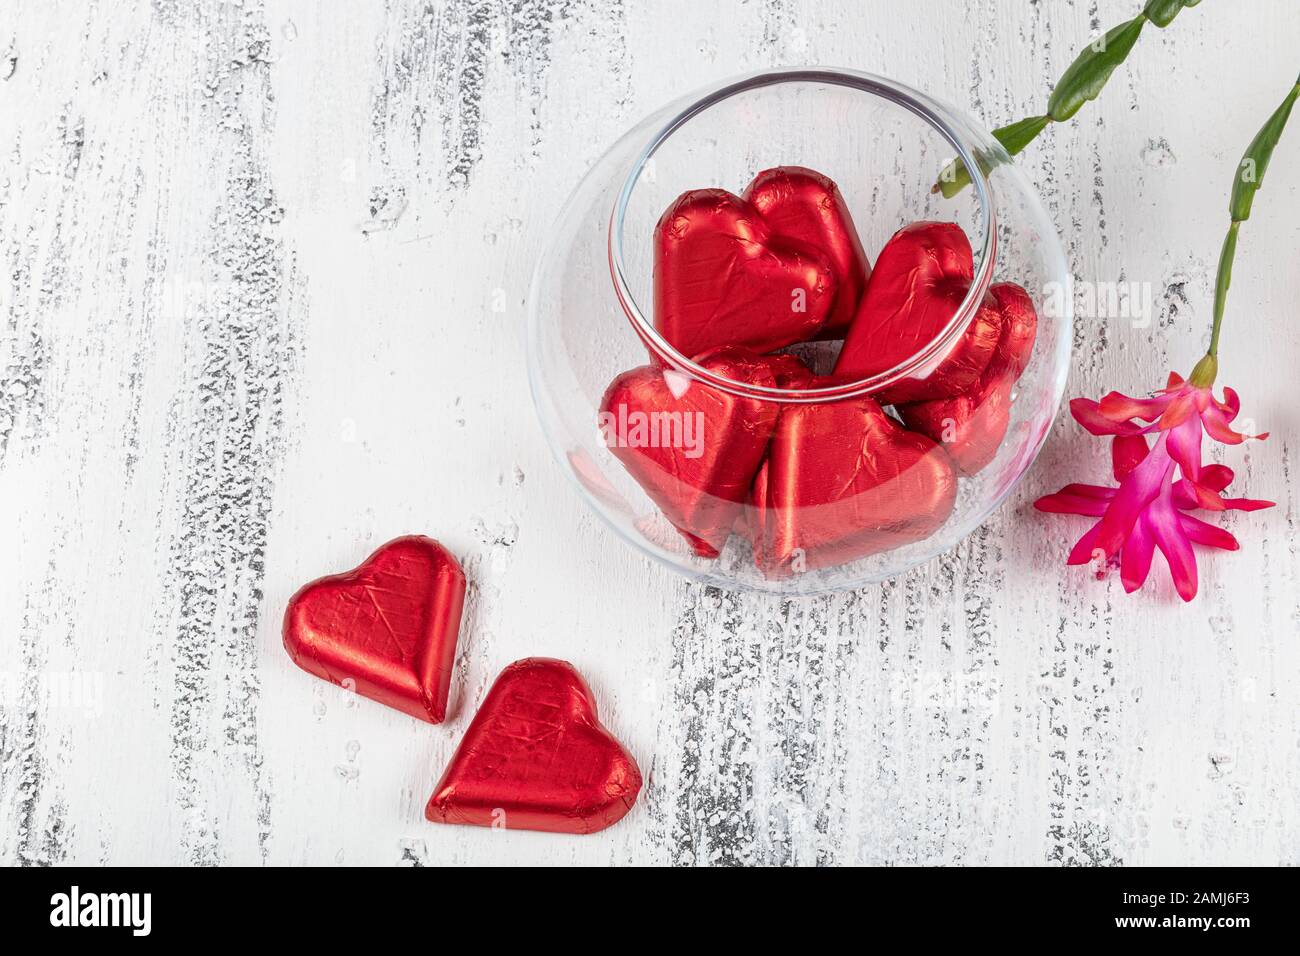 Caramelos de chocolate en forma de corazón envueltos en papel de aluminio  para el día de San Valentín. Día de San Valentín de fondo con chocolates  corazones y rojo febrero flor Fotografía